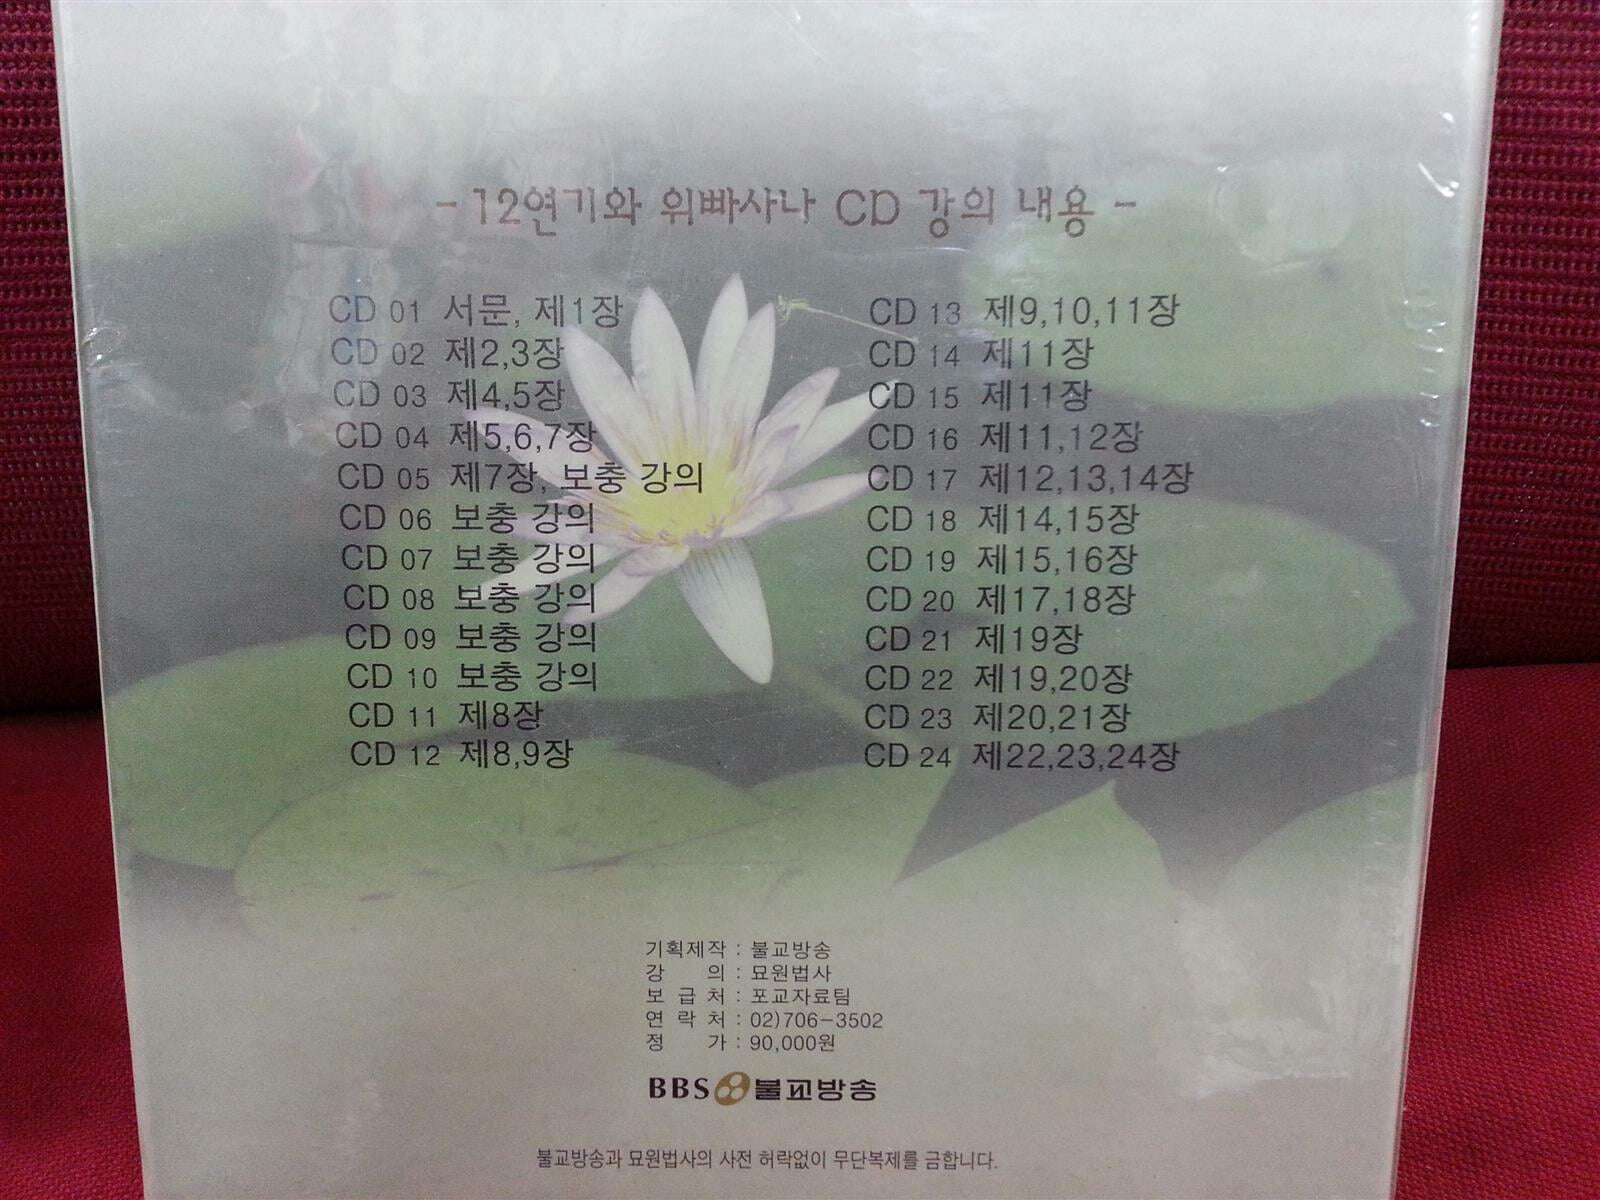 12연기와 위빠사나 강의 - 불교방송 불교강좌 묘원법사의 12연기와 위빠사나 강의를 CD로 제작